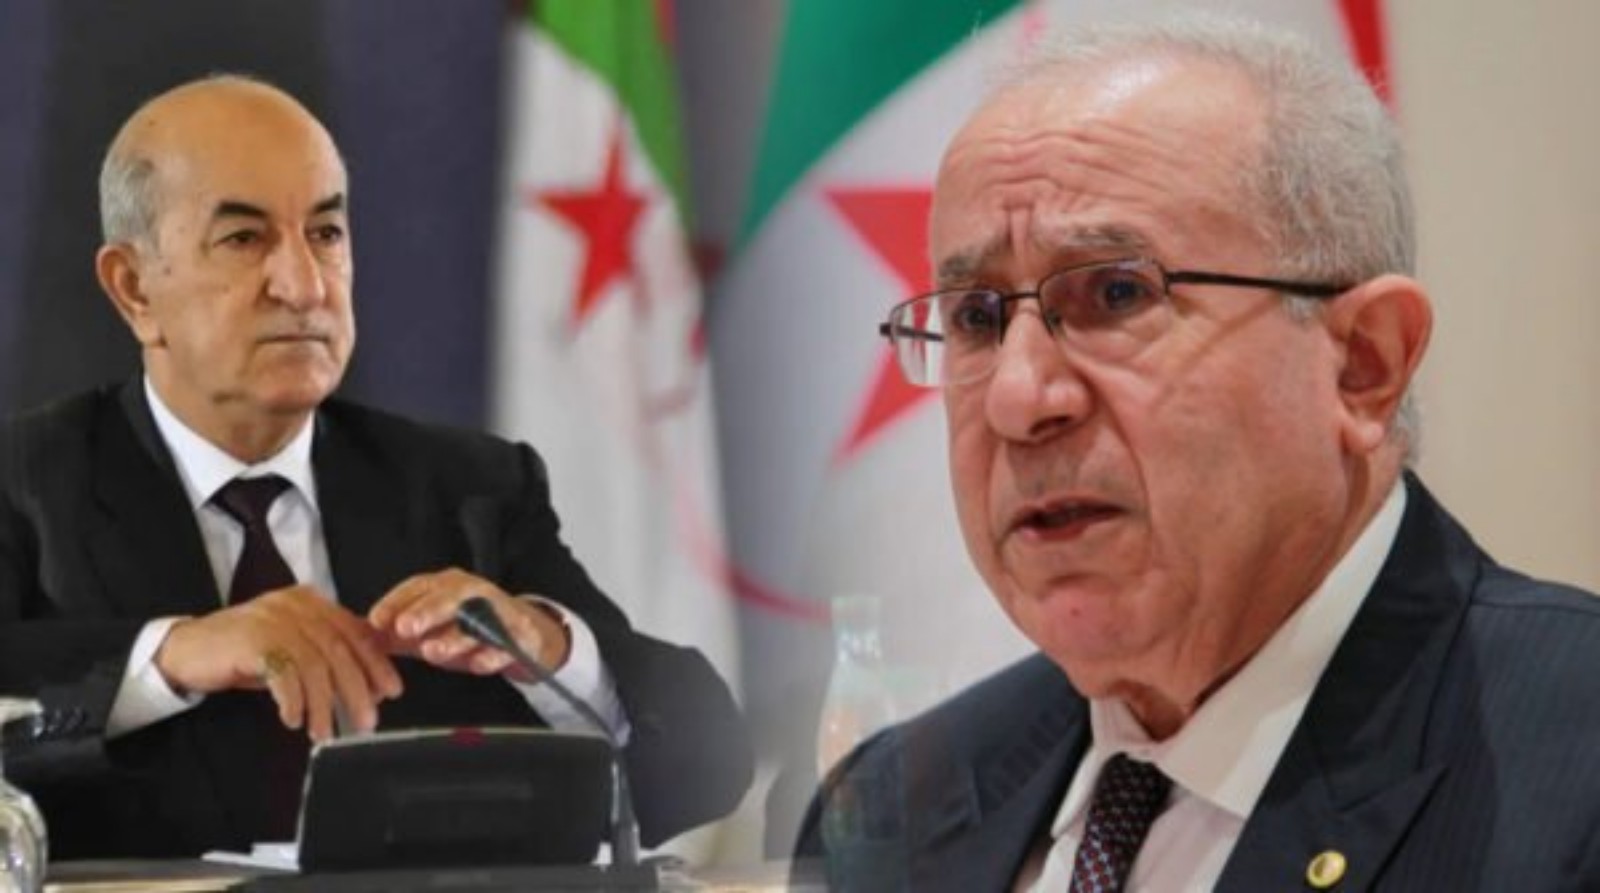 فشل ذريع يحيط بالقمة العربية بالجزائر بعد تخلف عدد من القادة العرب عن الحضور